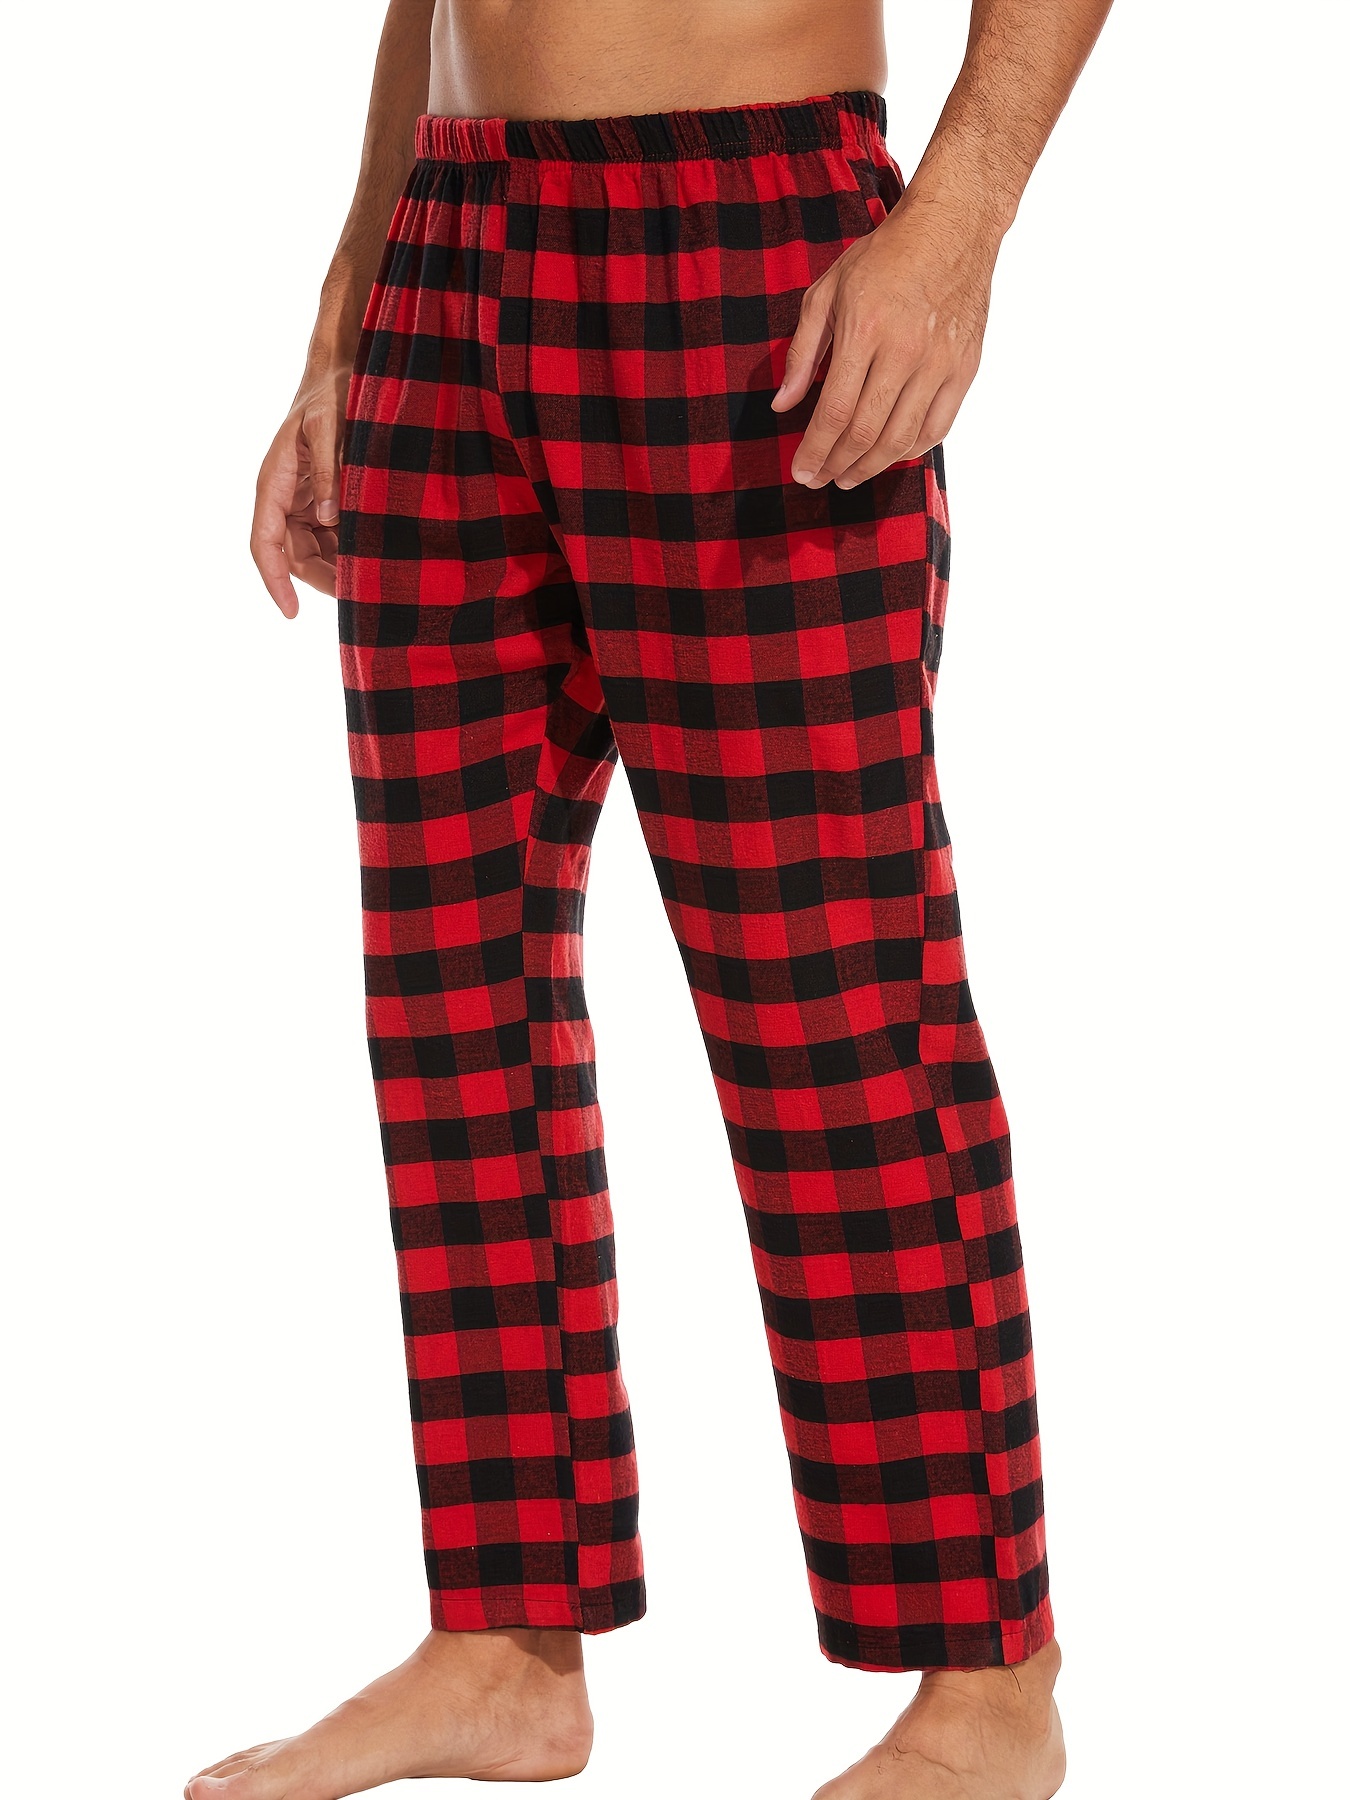 Pijama para hombre invierno manga larga JHI0227